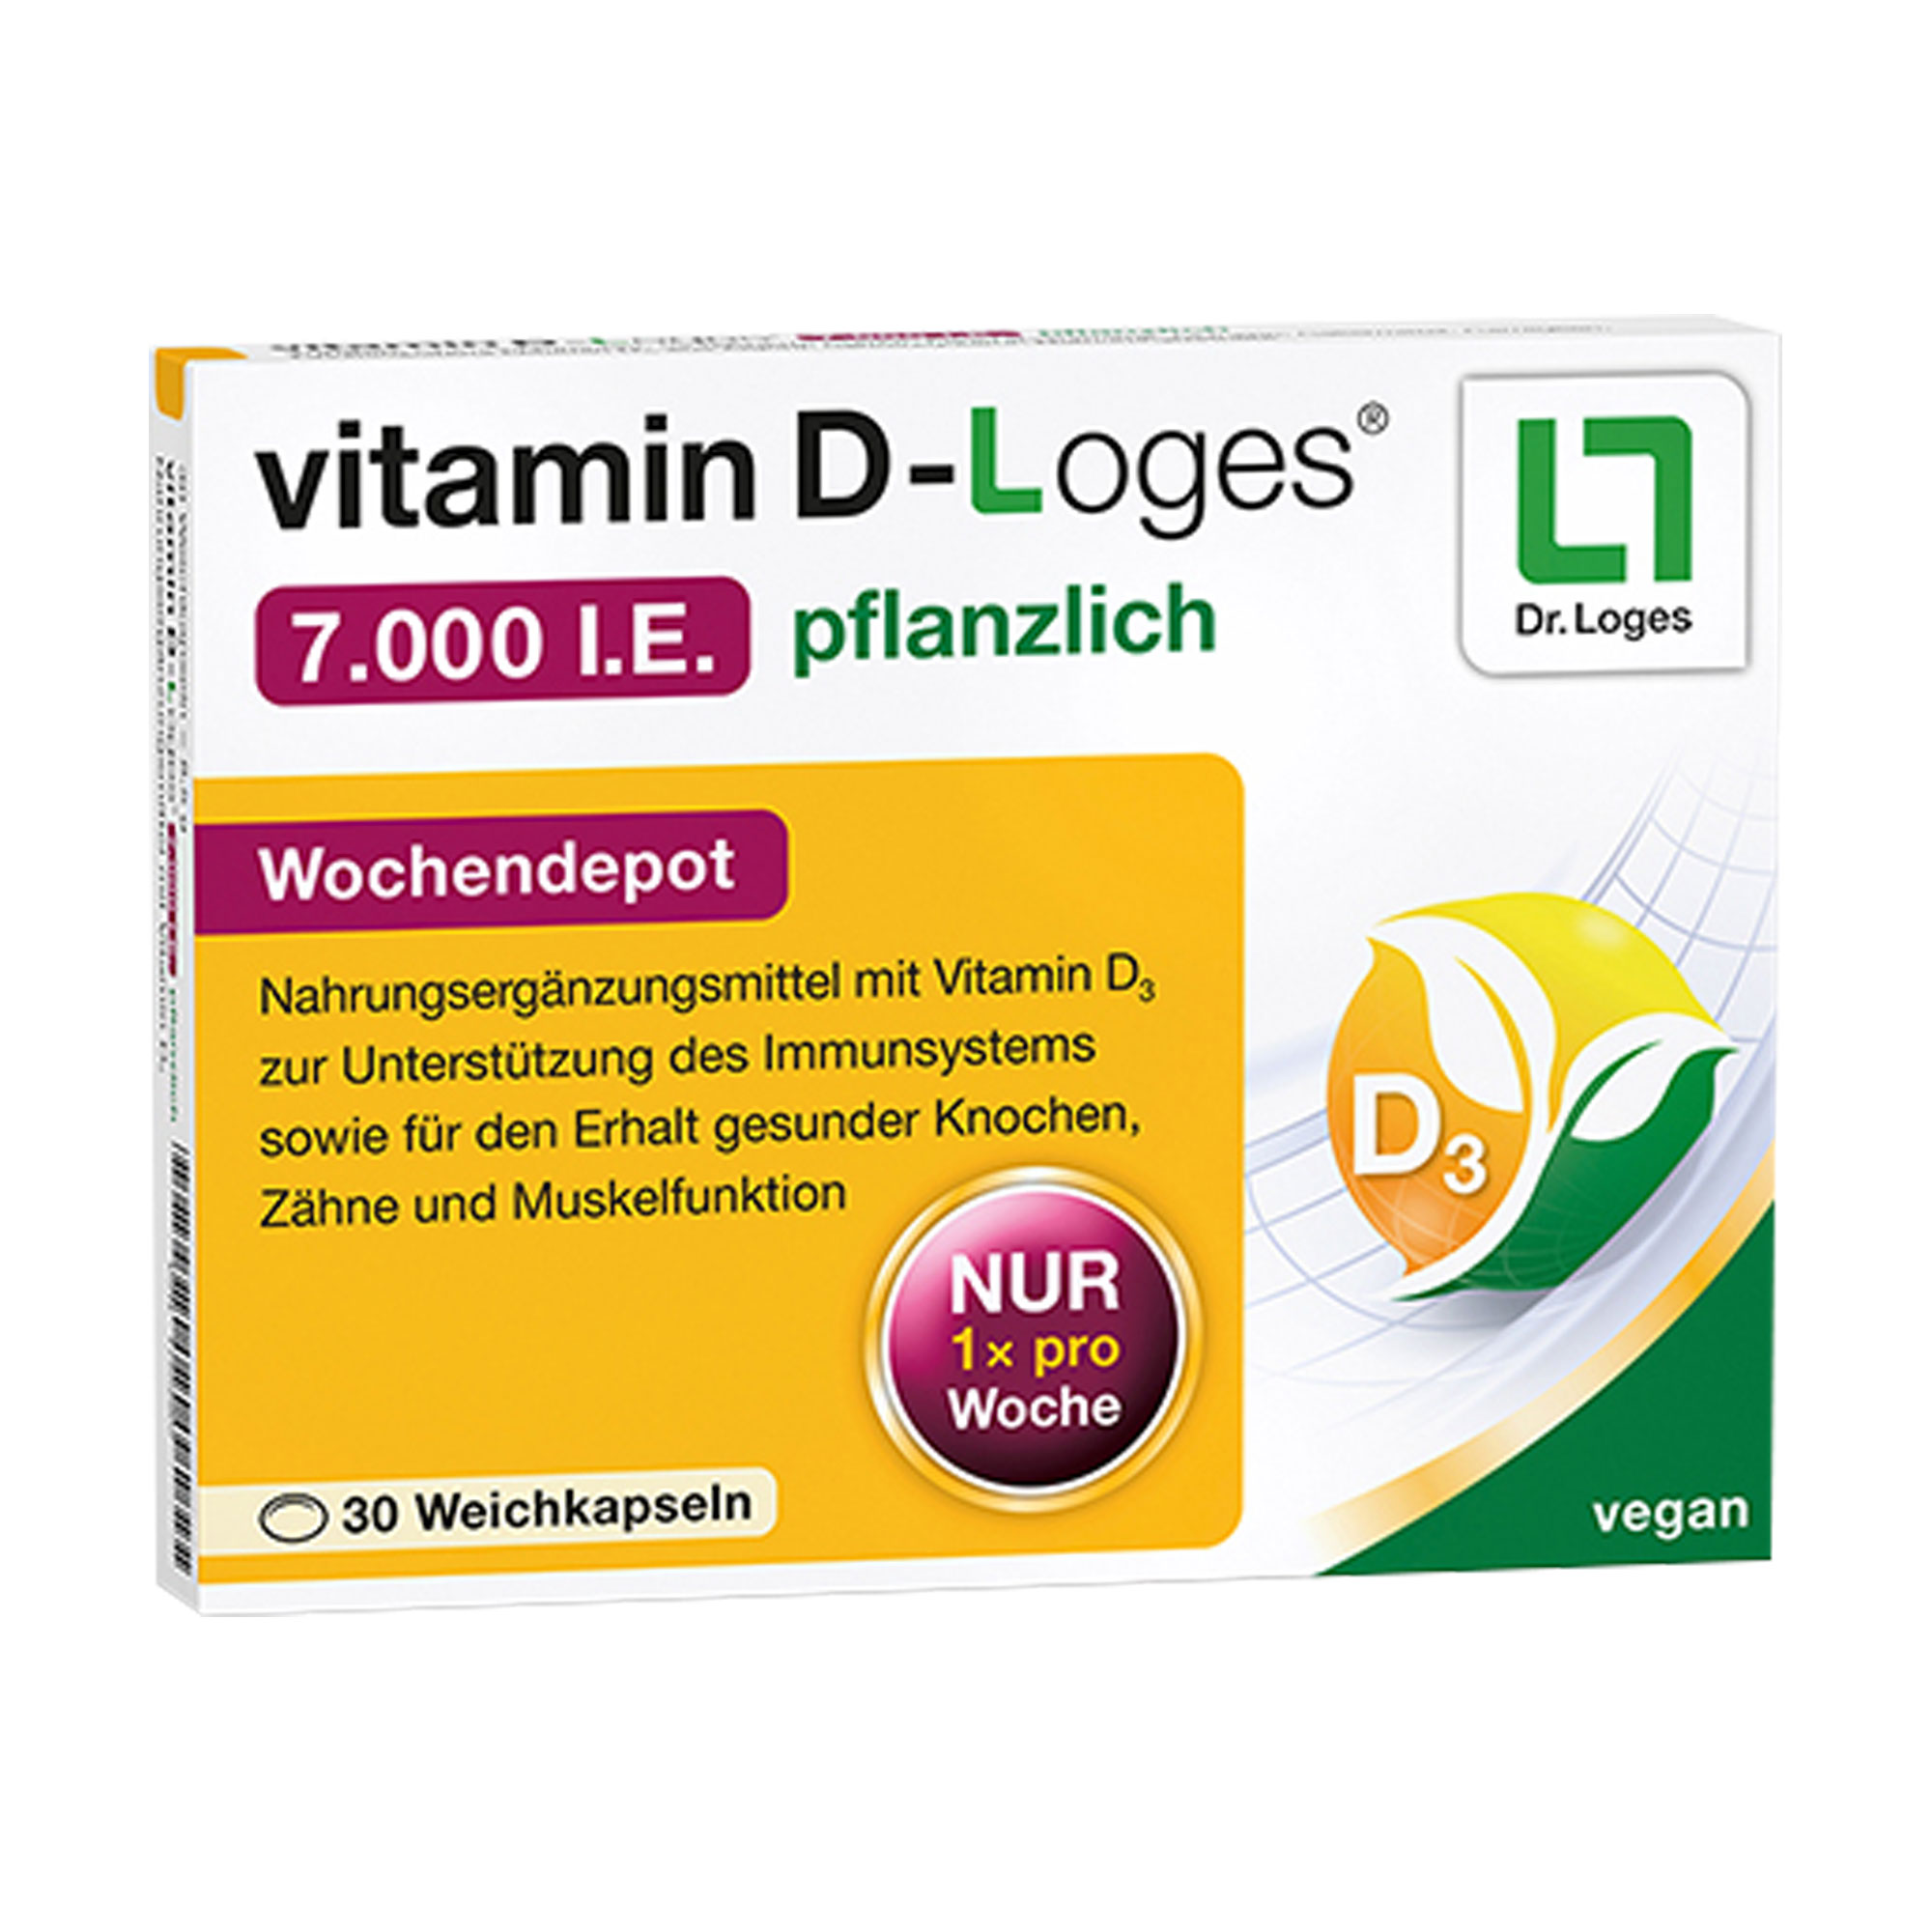 Nahrungsergänzungsmittel zur wöchentlichen Versorgung mit Vitamin D3.